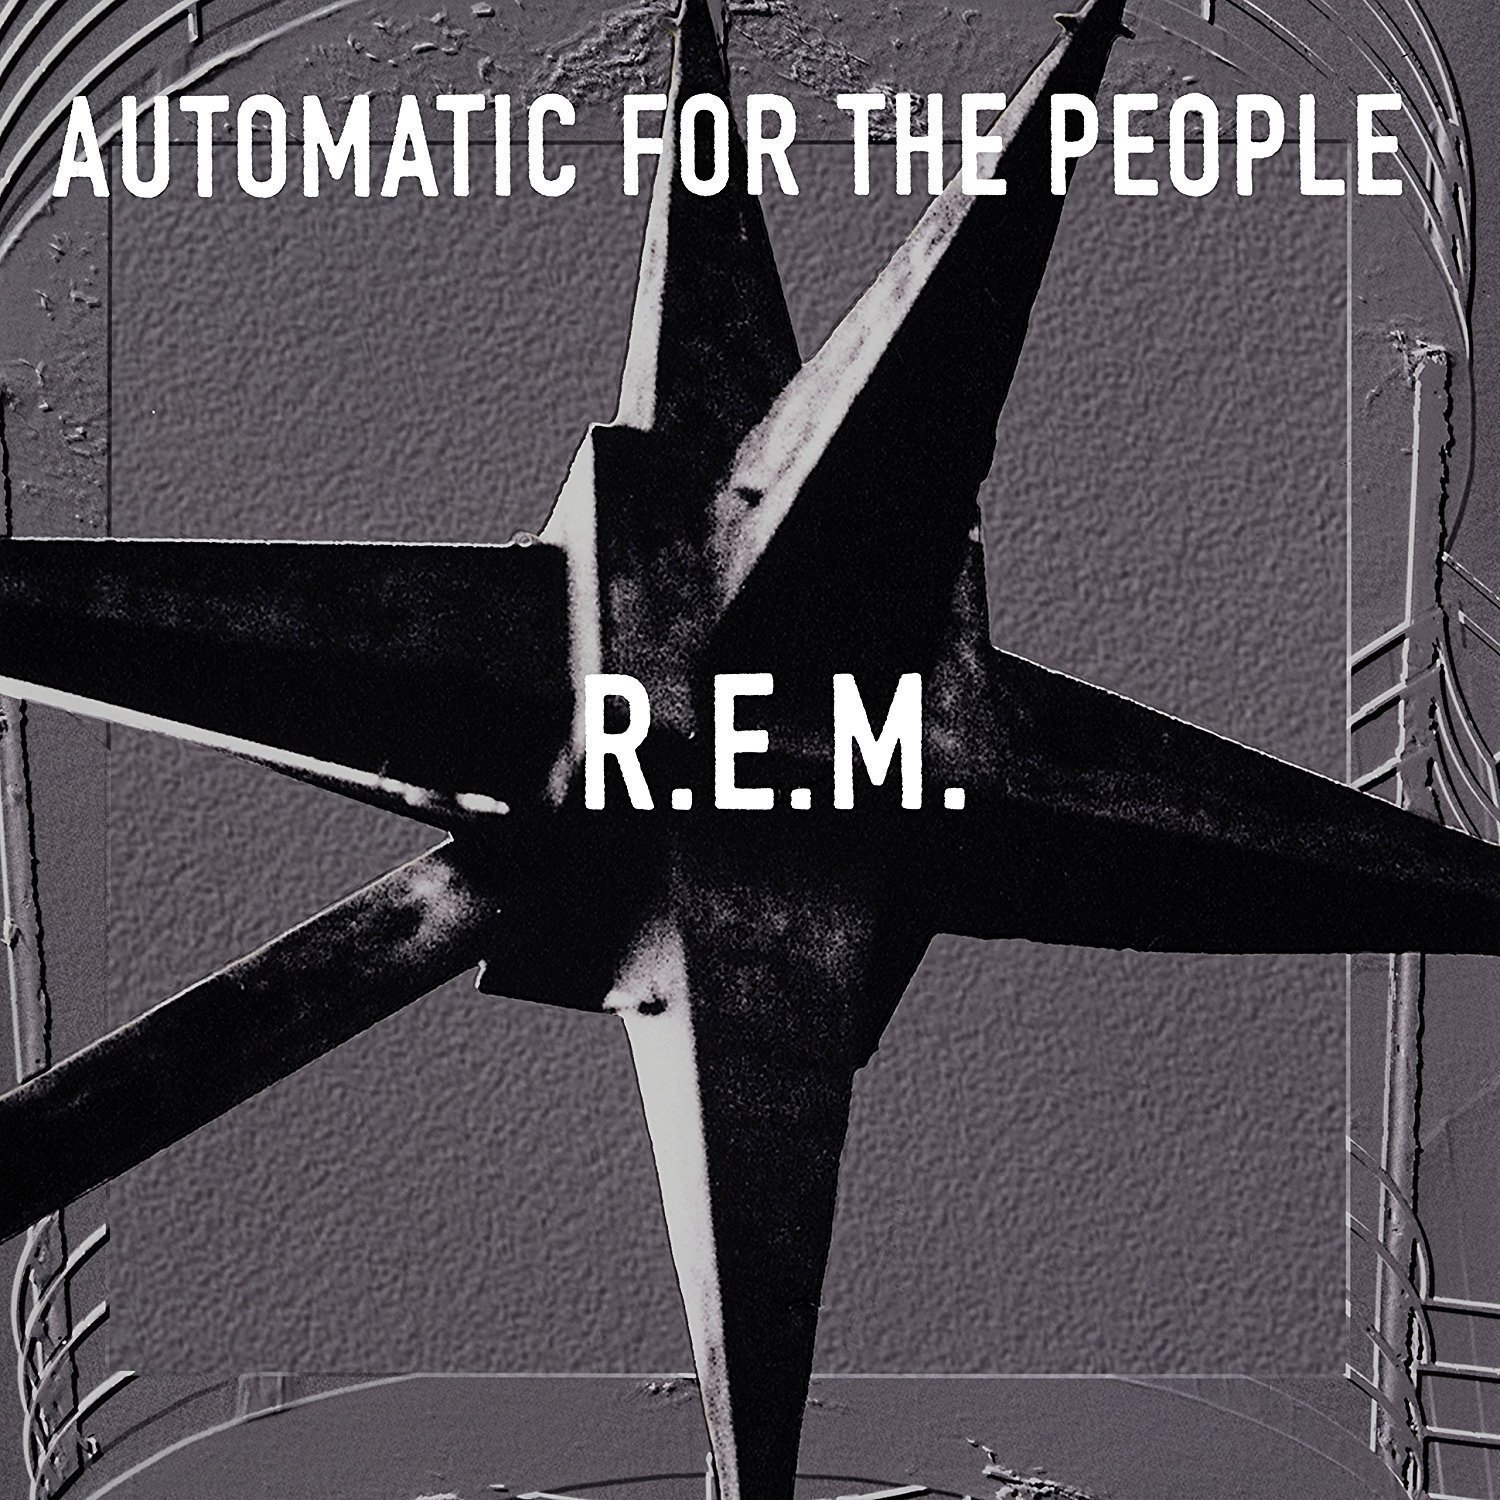 Vinile R.E.M. - Automatic For The People NUOVO SIGILLATO, EDIZIONE DEL 27/11/2017 SUBITO DISPONIBILE